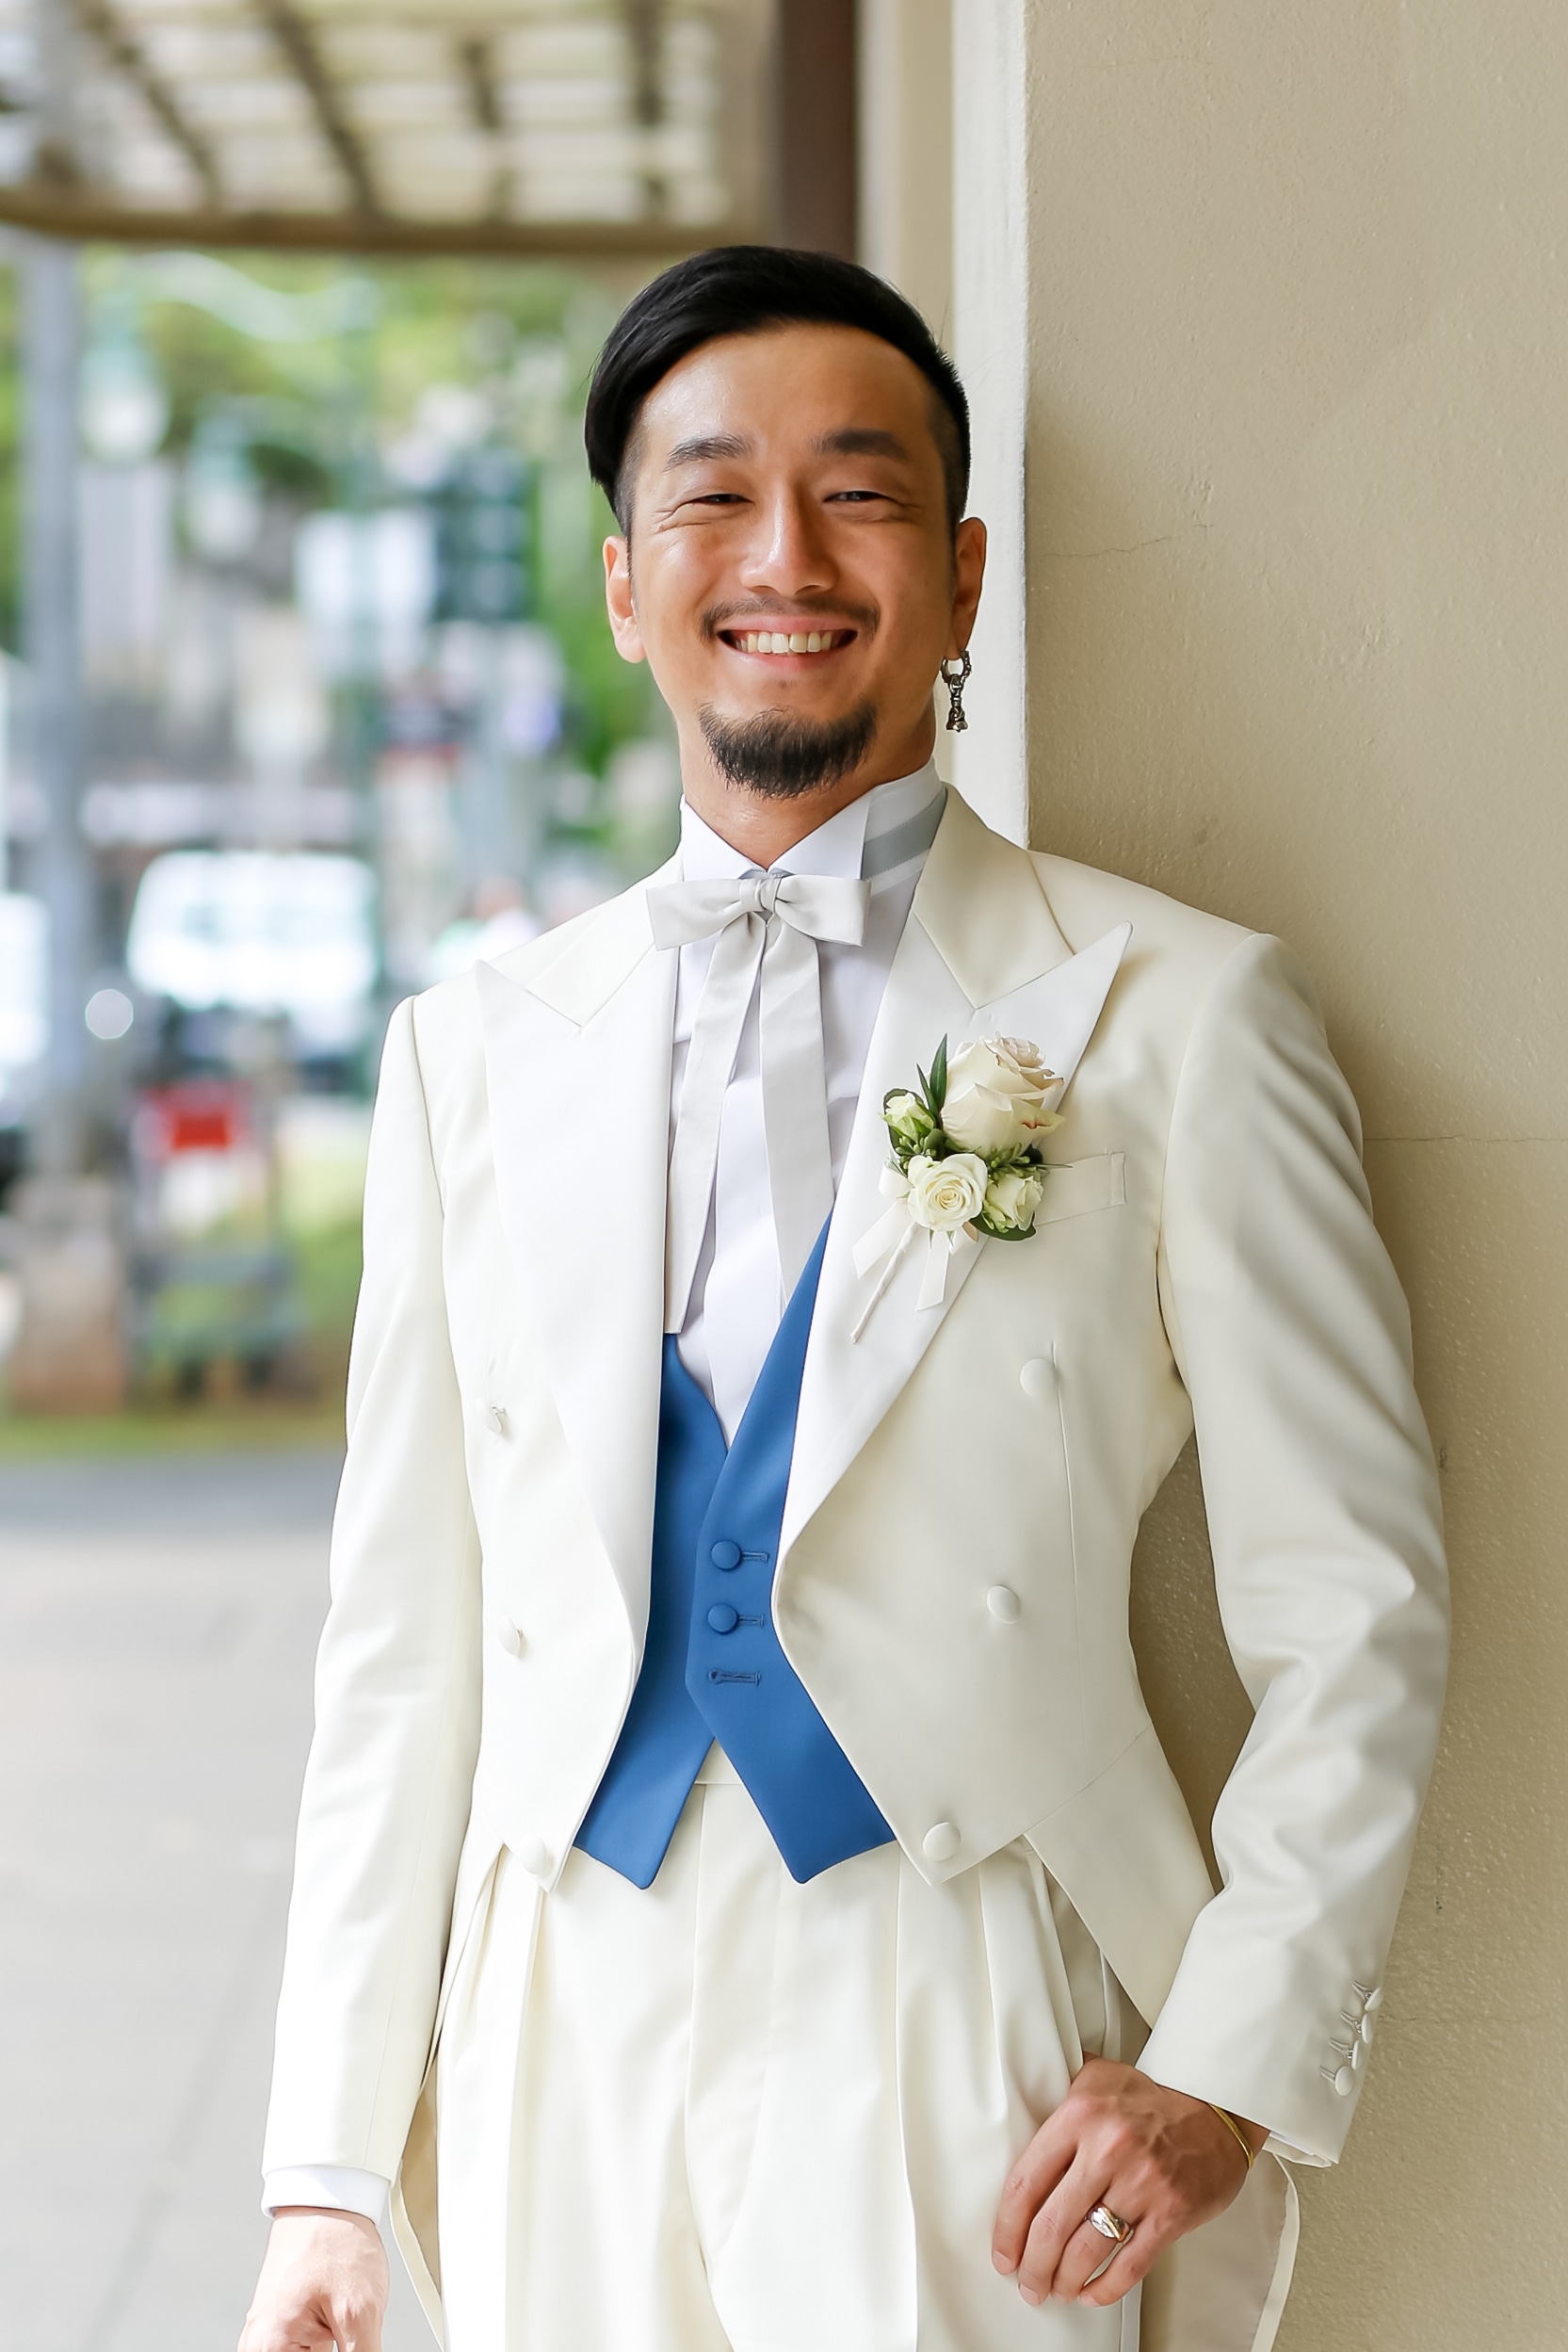 結婚式のオーダースーツ タキシード おしゃれな新郎衣装は大阪 心斎橋のテーラーluxum